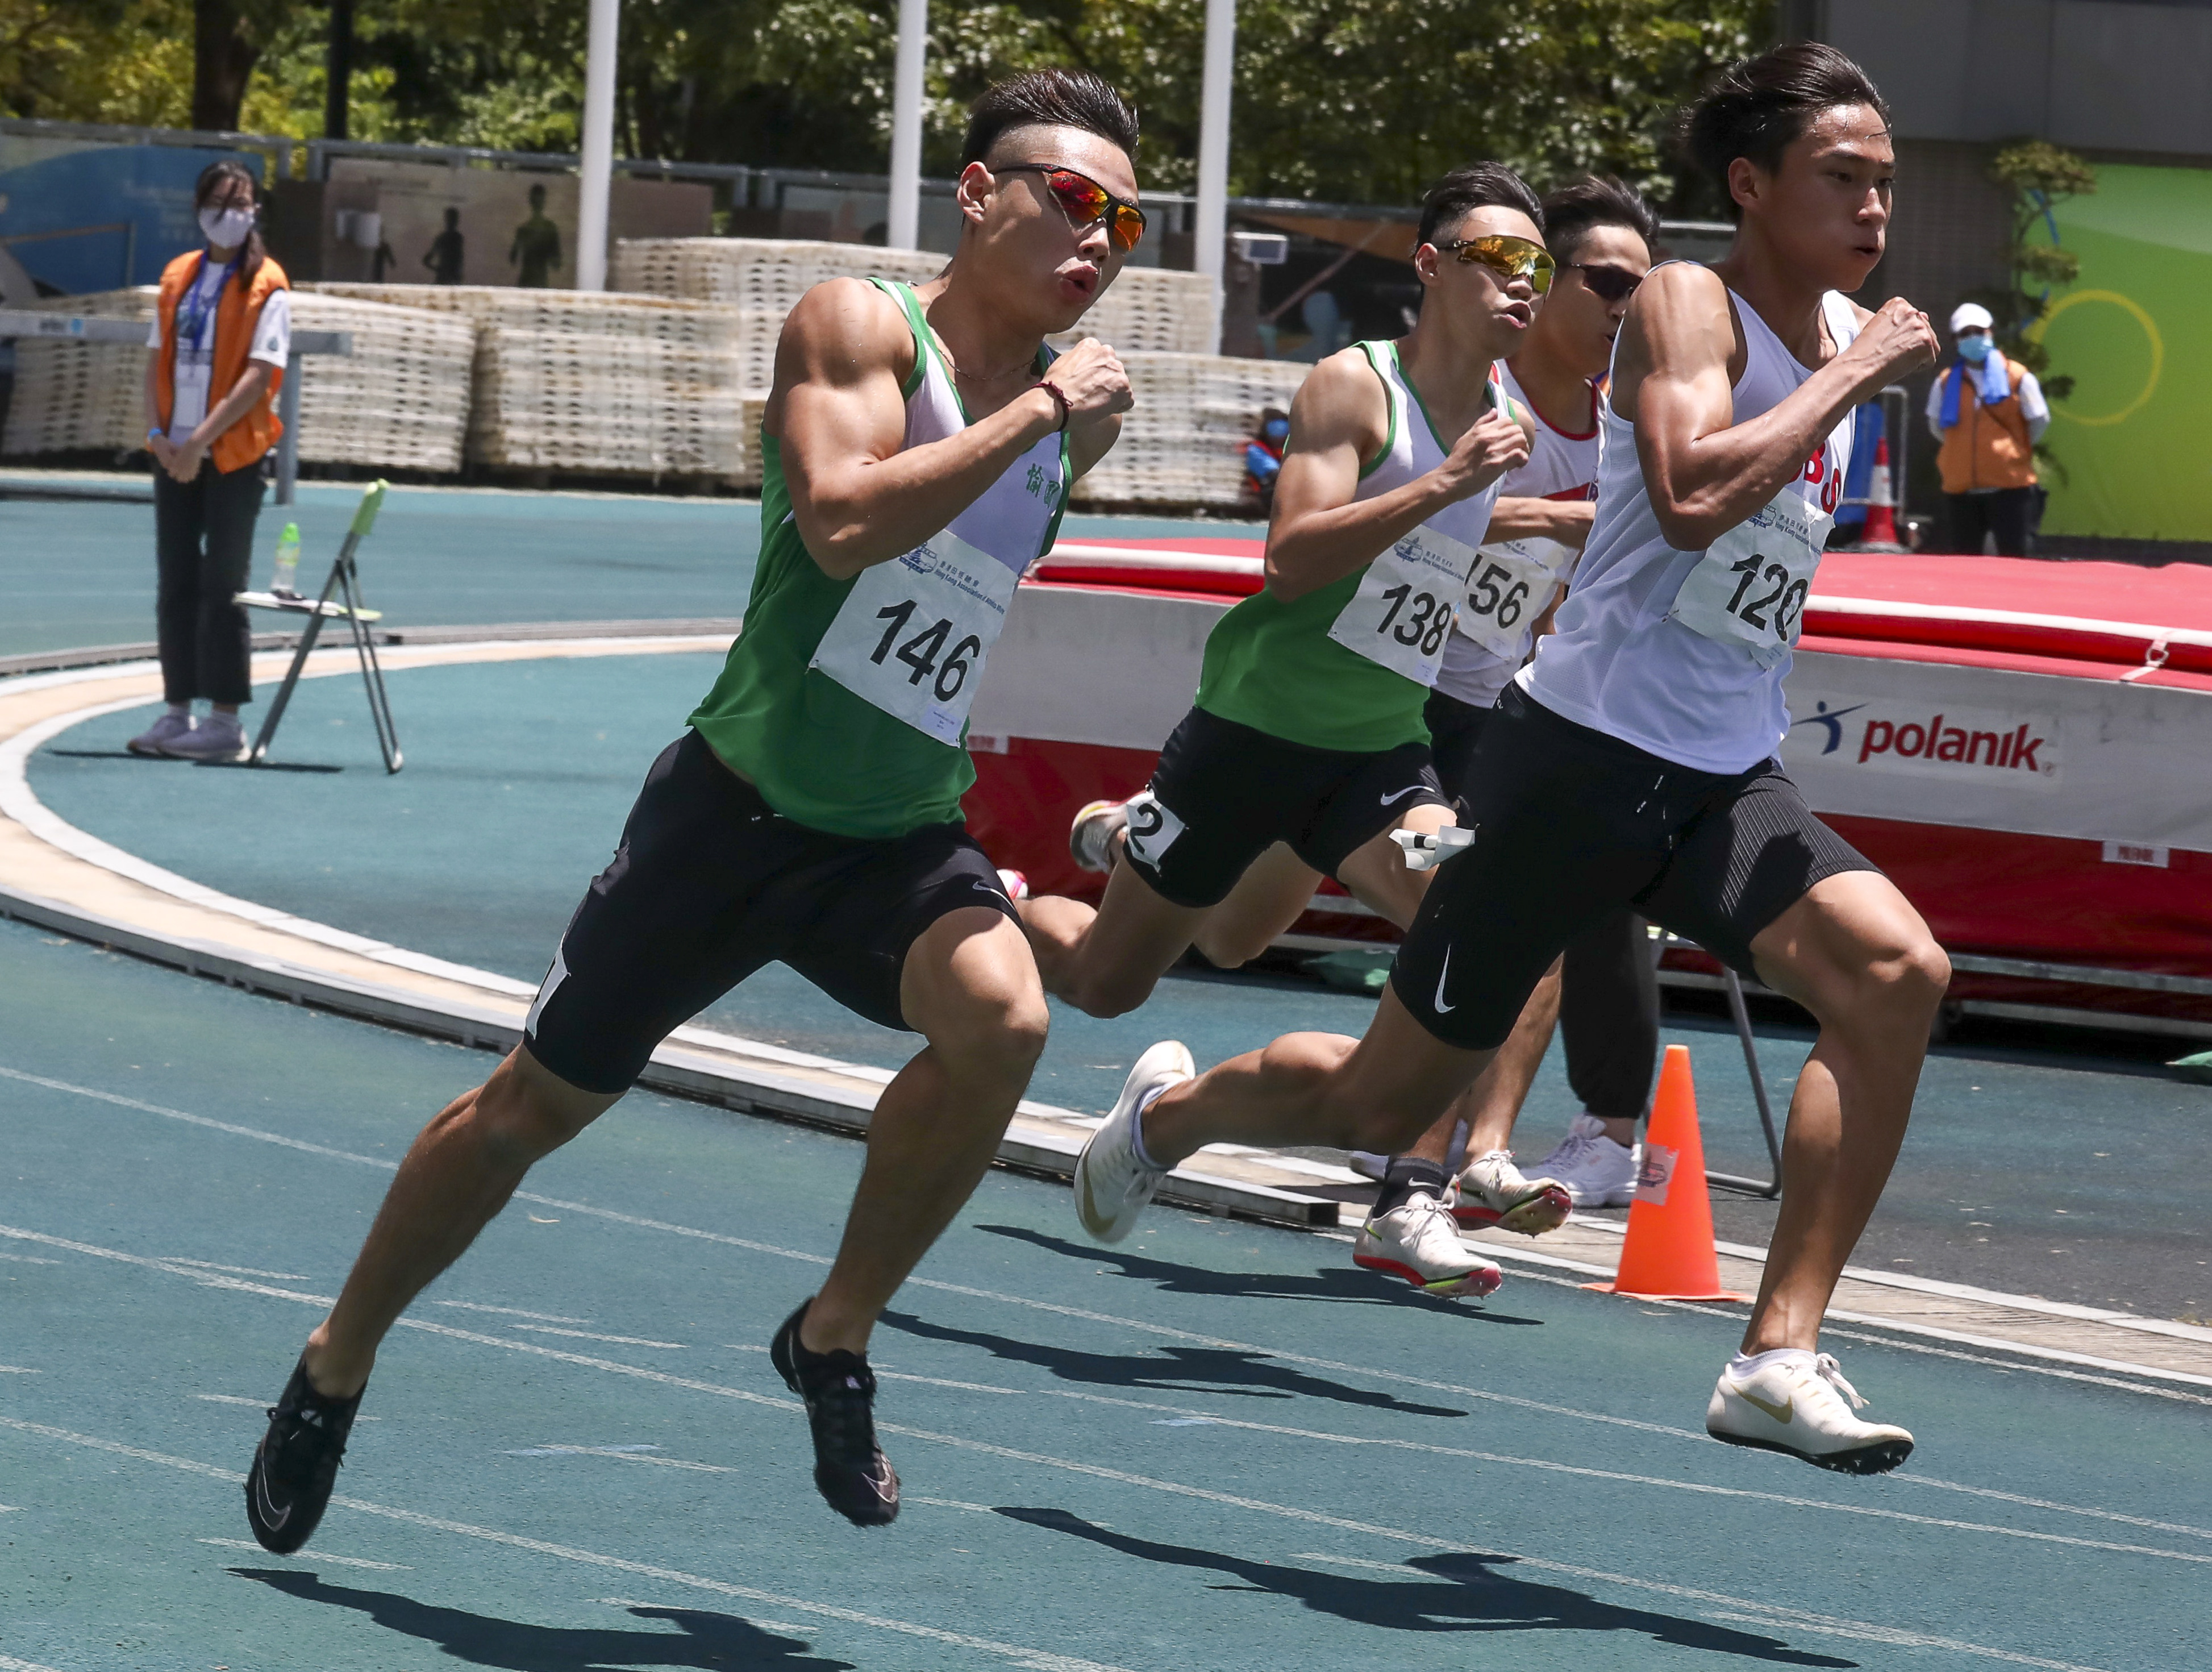 Shak Kam-ching (left) competing during the men’s 200m race at the Hong Kong Athletics Championships at Tseung Kwan O Sports Ground. Photo: Jonathan Wong